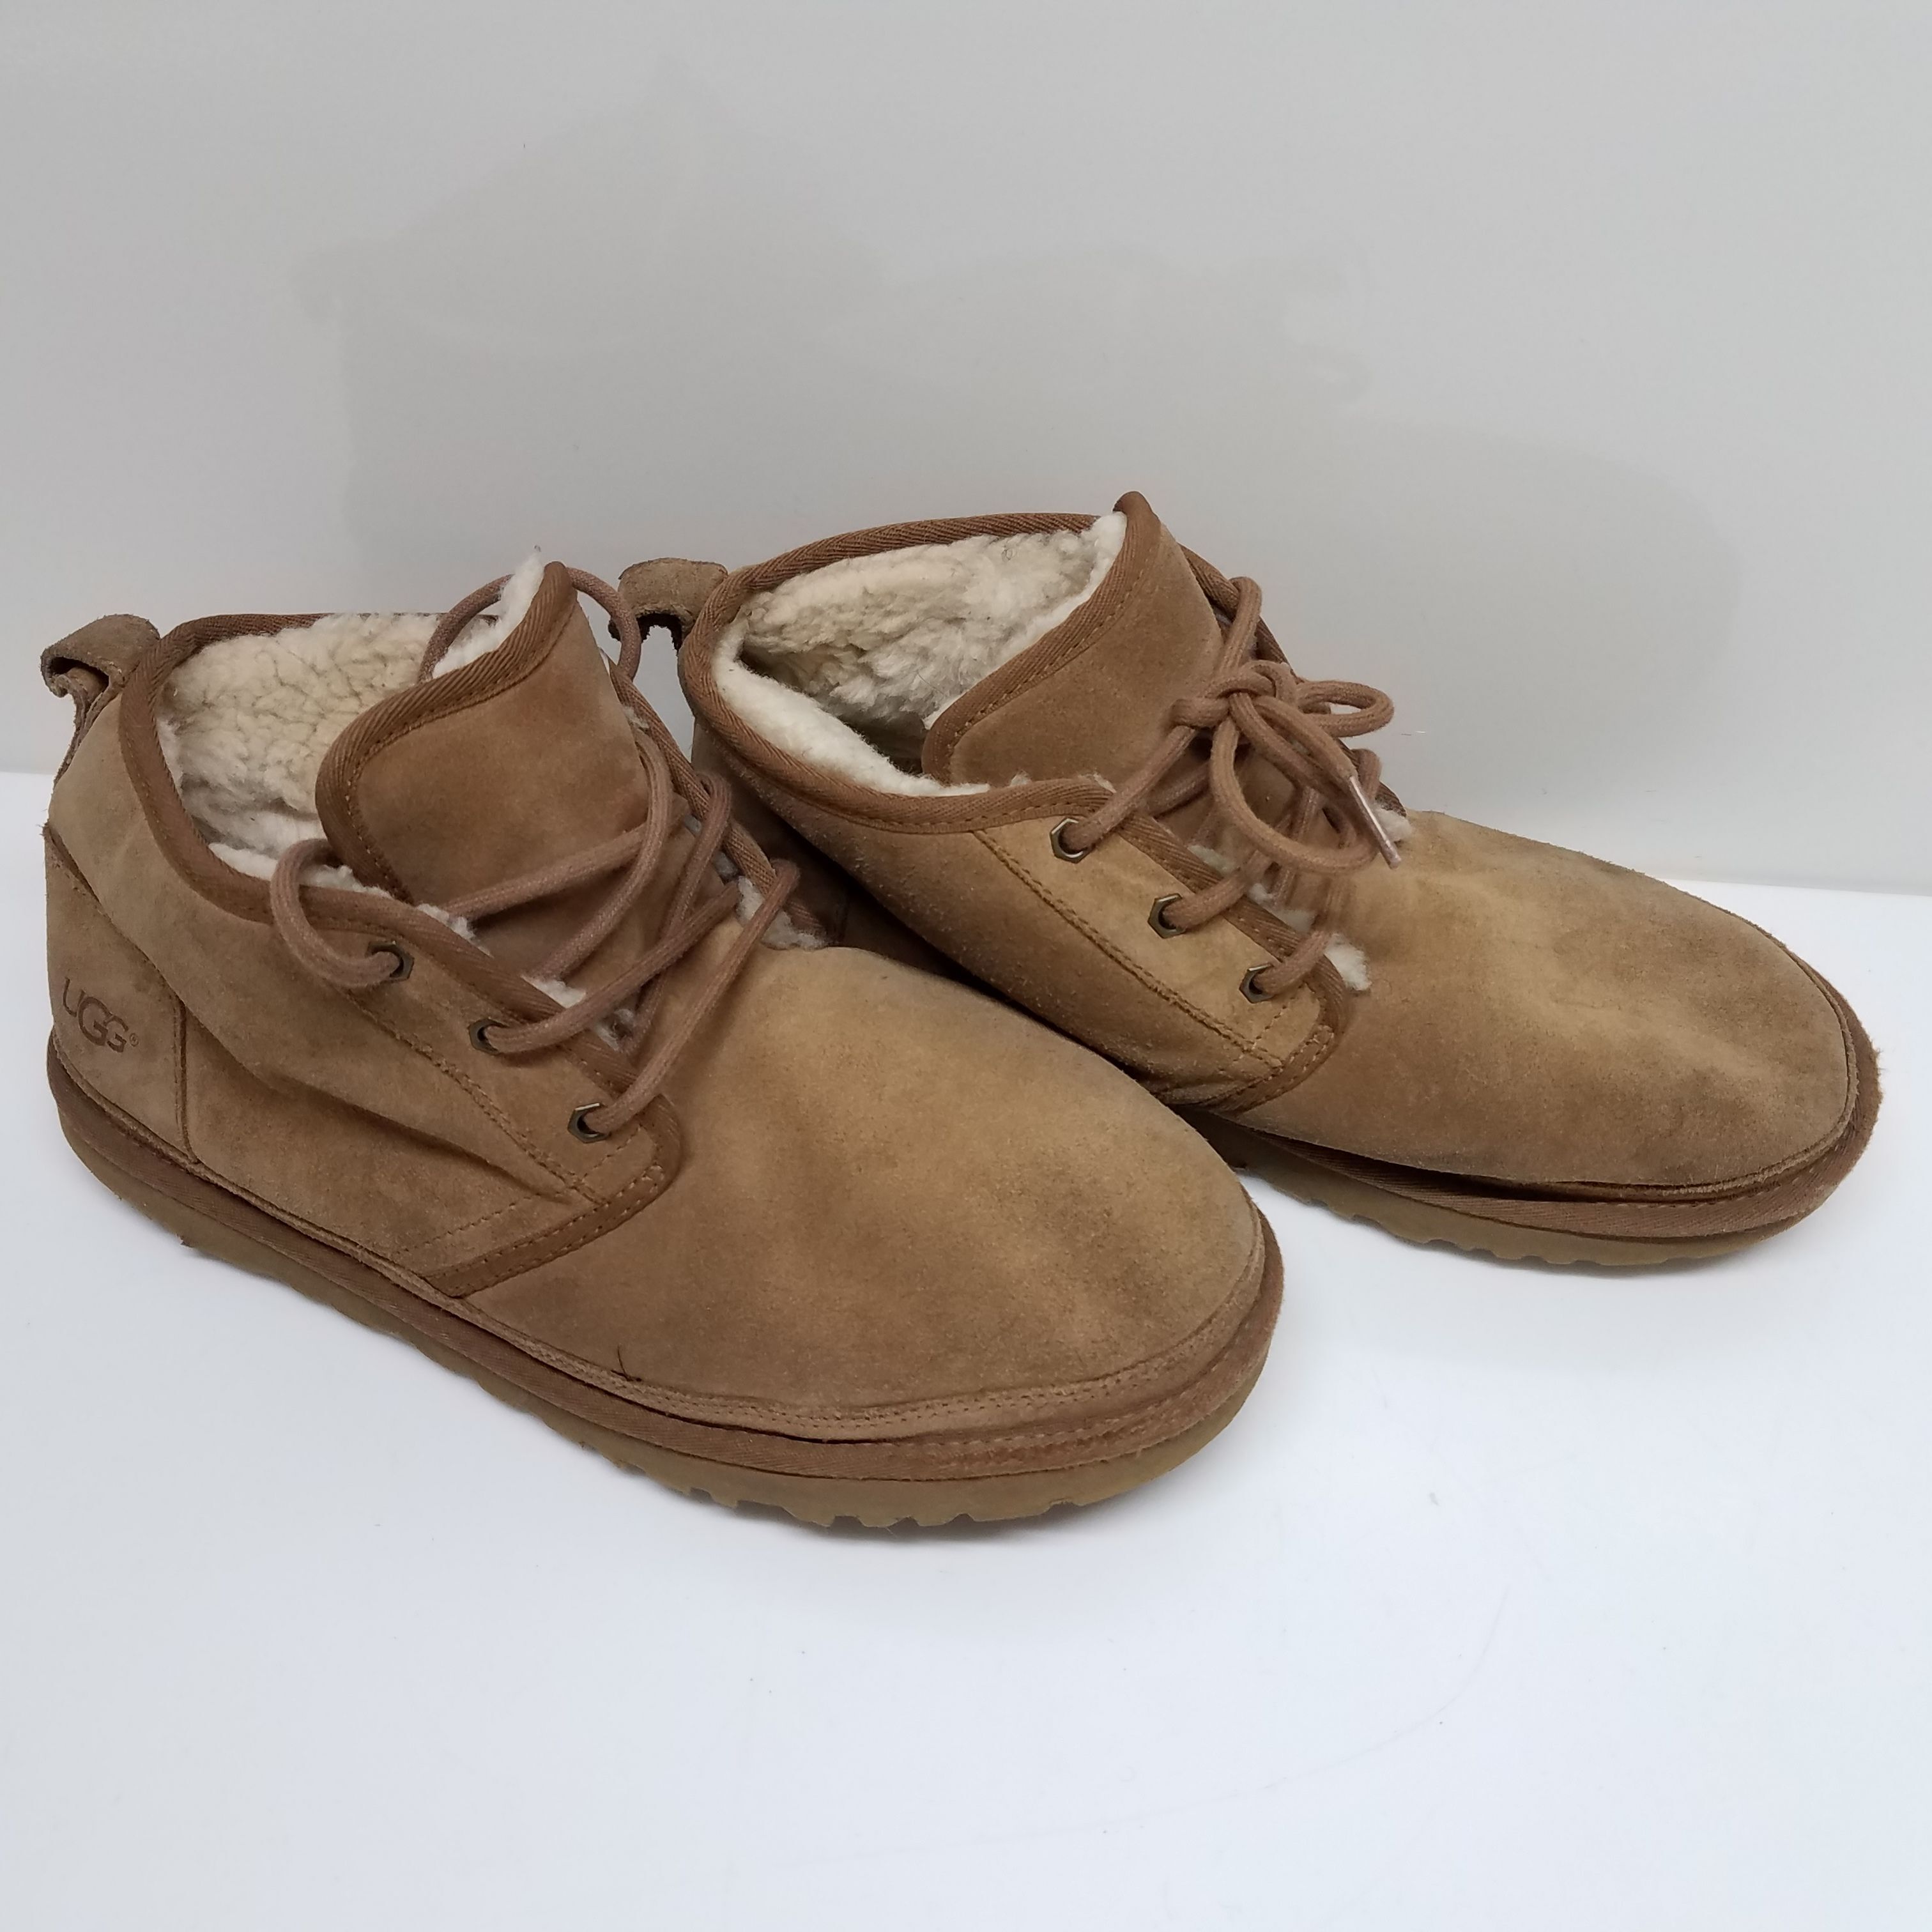 Geox Kids' Trottola Waterproof Faux Fur Lined Sneaker - ShopStyle Girls'  Shoes